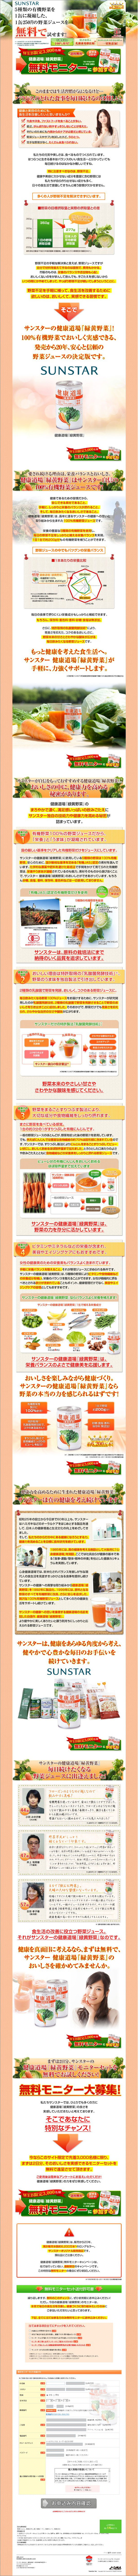 1缶250円の野菜ジュースを無料で試せます! 健康道場『緑黄野菜』